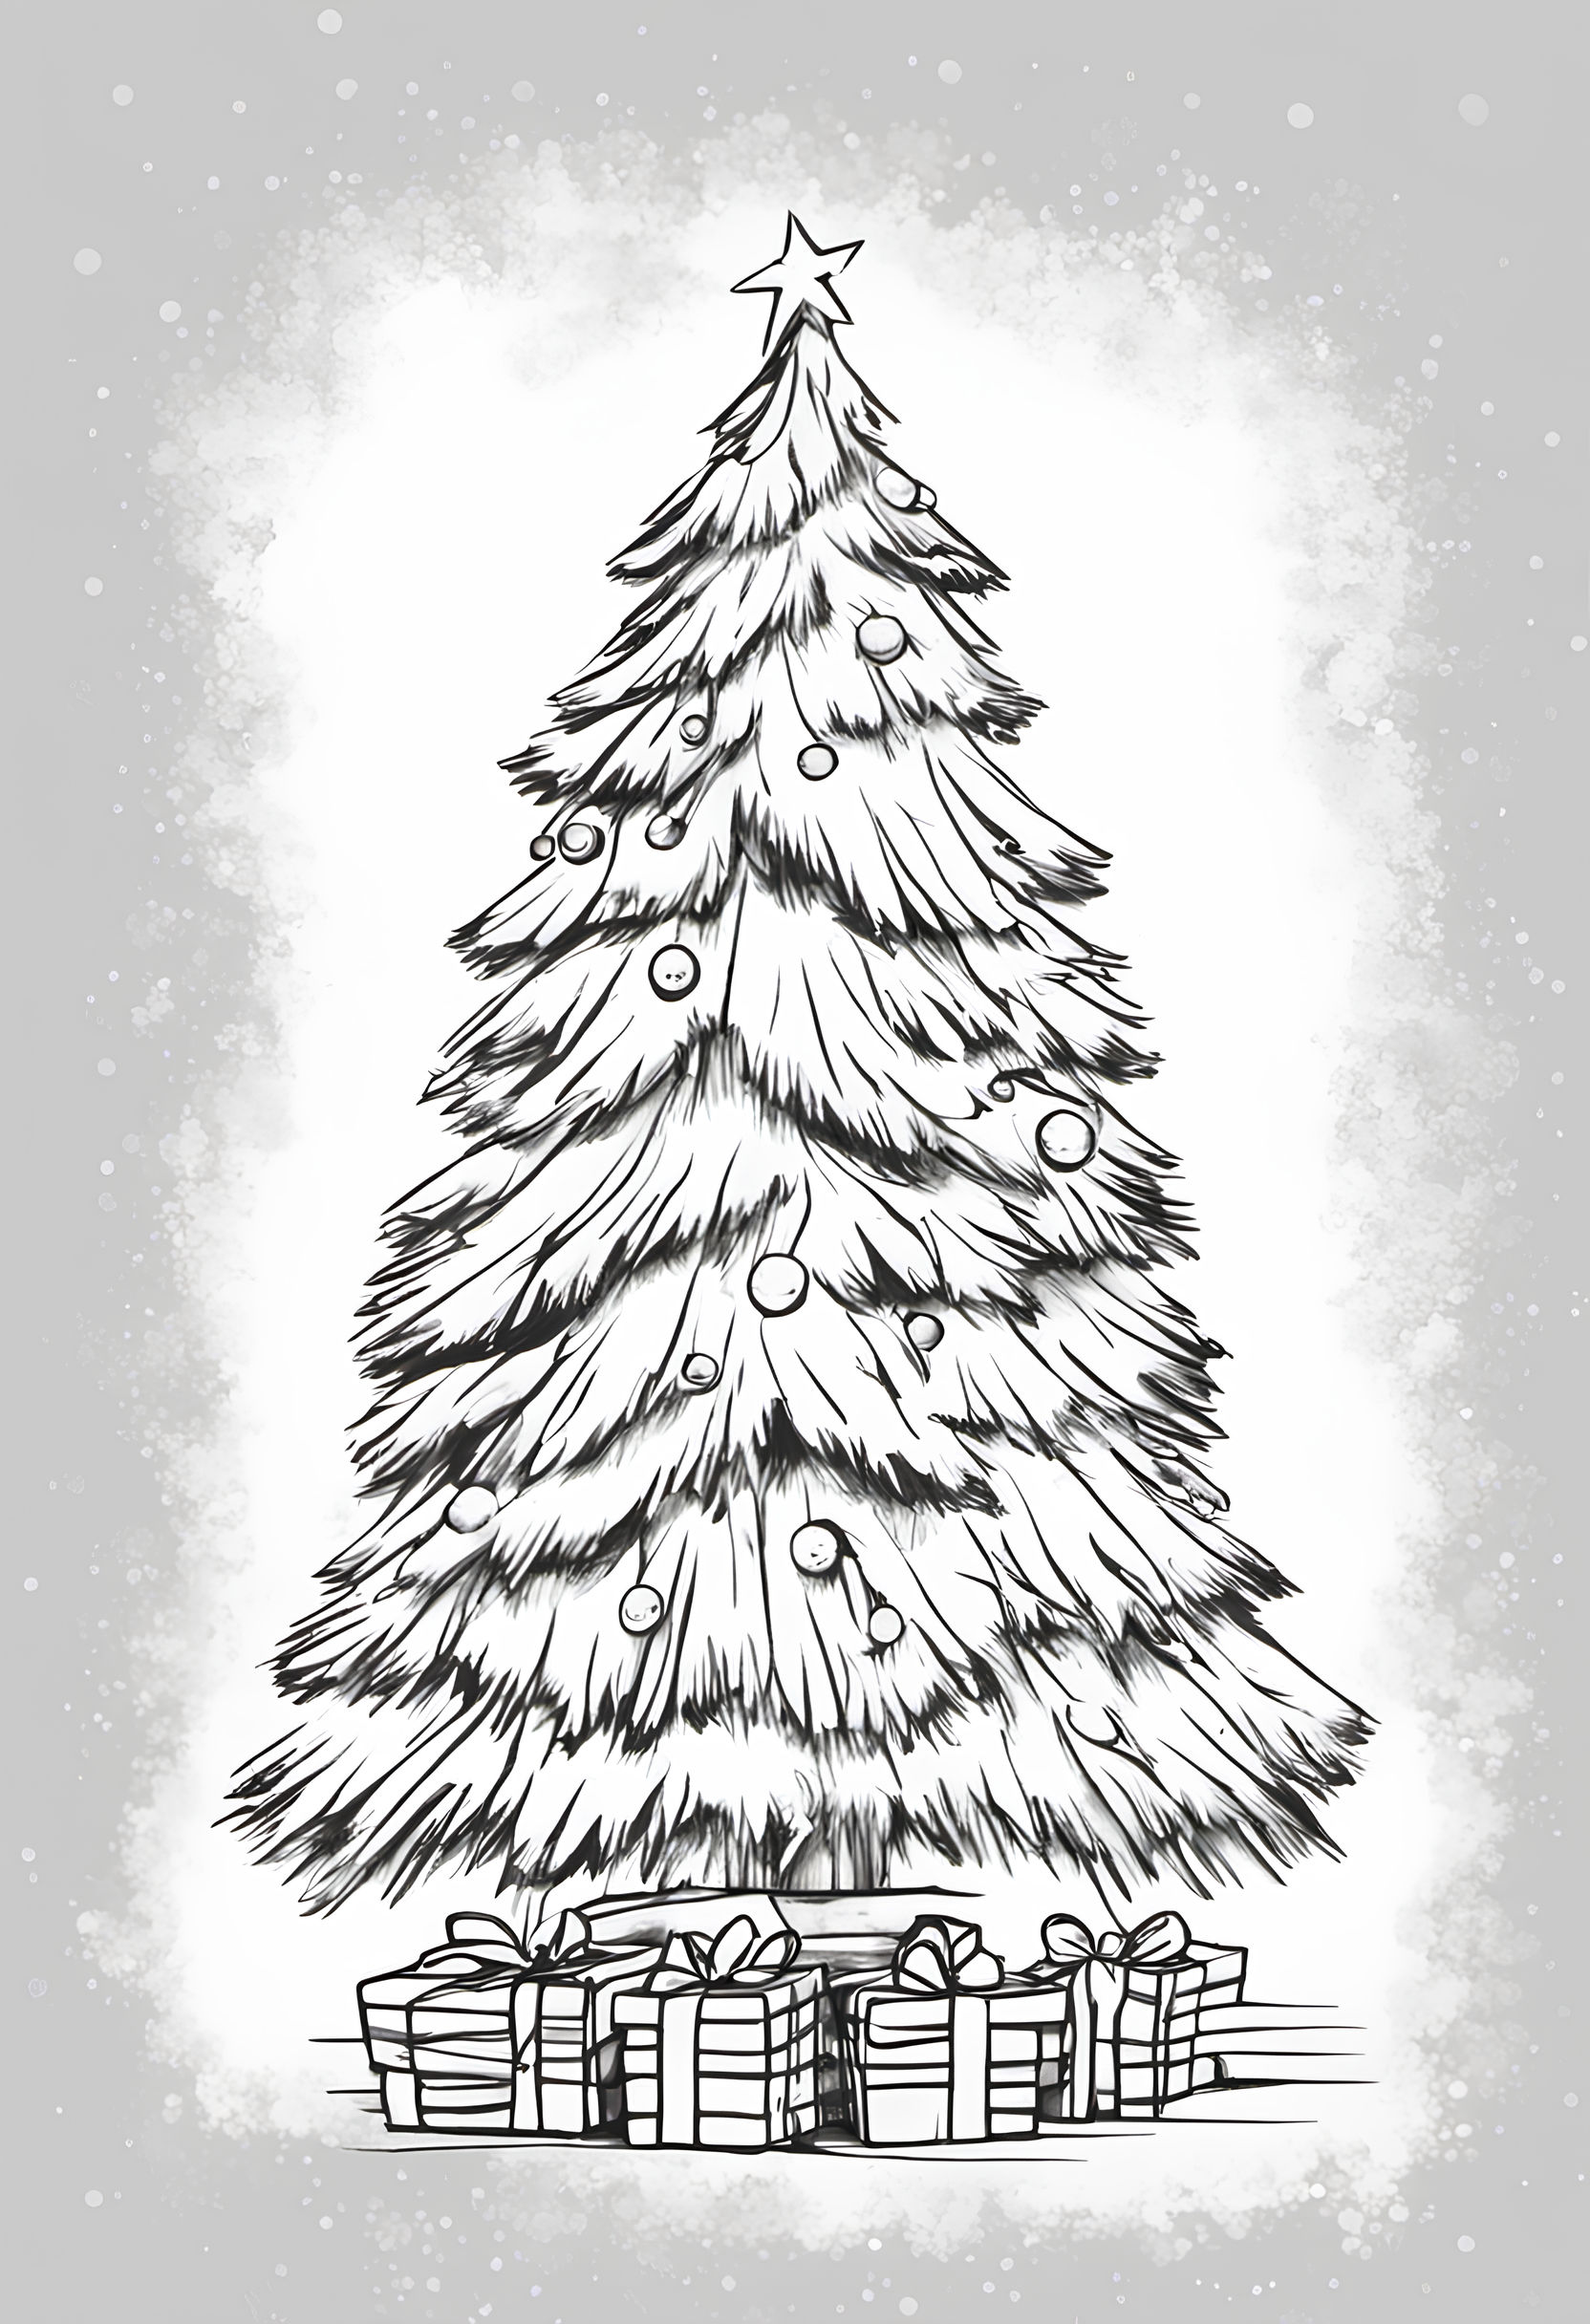 Ausmalbild - Weihnachtsbaum mit Geschenken